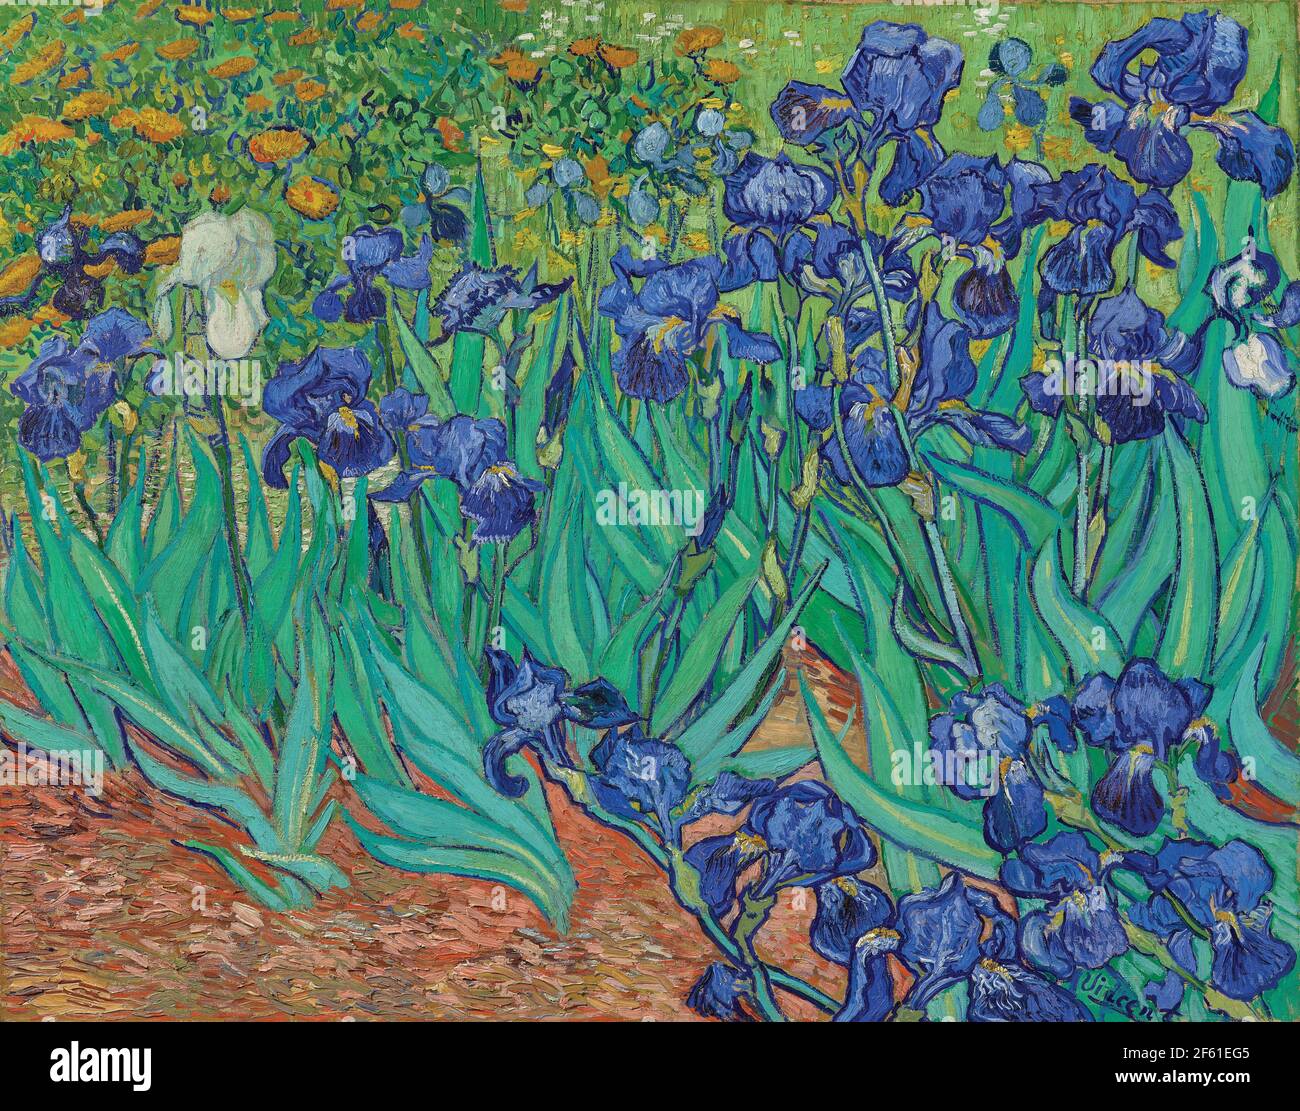 Iris von Vincent van Gogh. Vincent van Gogh, 1853 - 1890, niederländischer Post-Impressionist-Künstler. Iris wurde 1889 gemalt, während van Gogh im Asyl in Saint-Rémy-de-Provence war. Das Werk befindet sich in der Sammlung des J.Paul Getty Museums in Los Angeles. Stockfoto